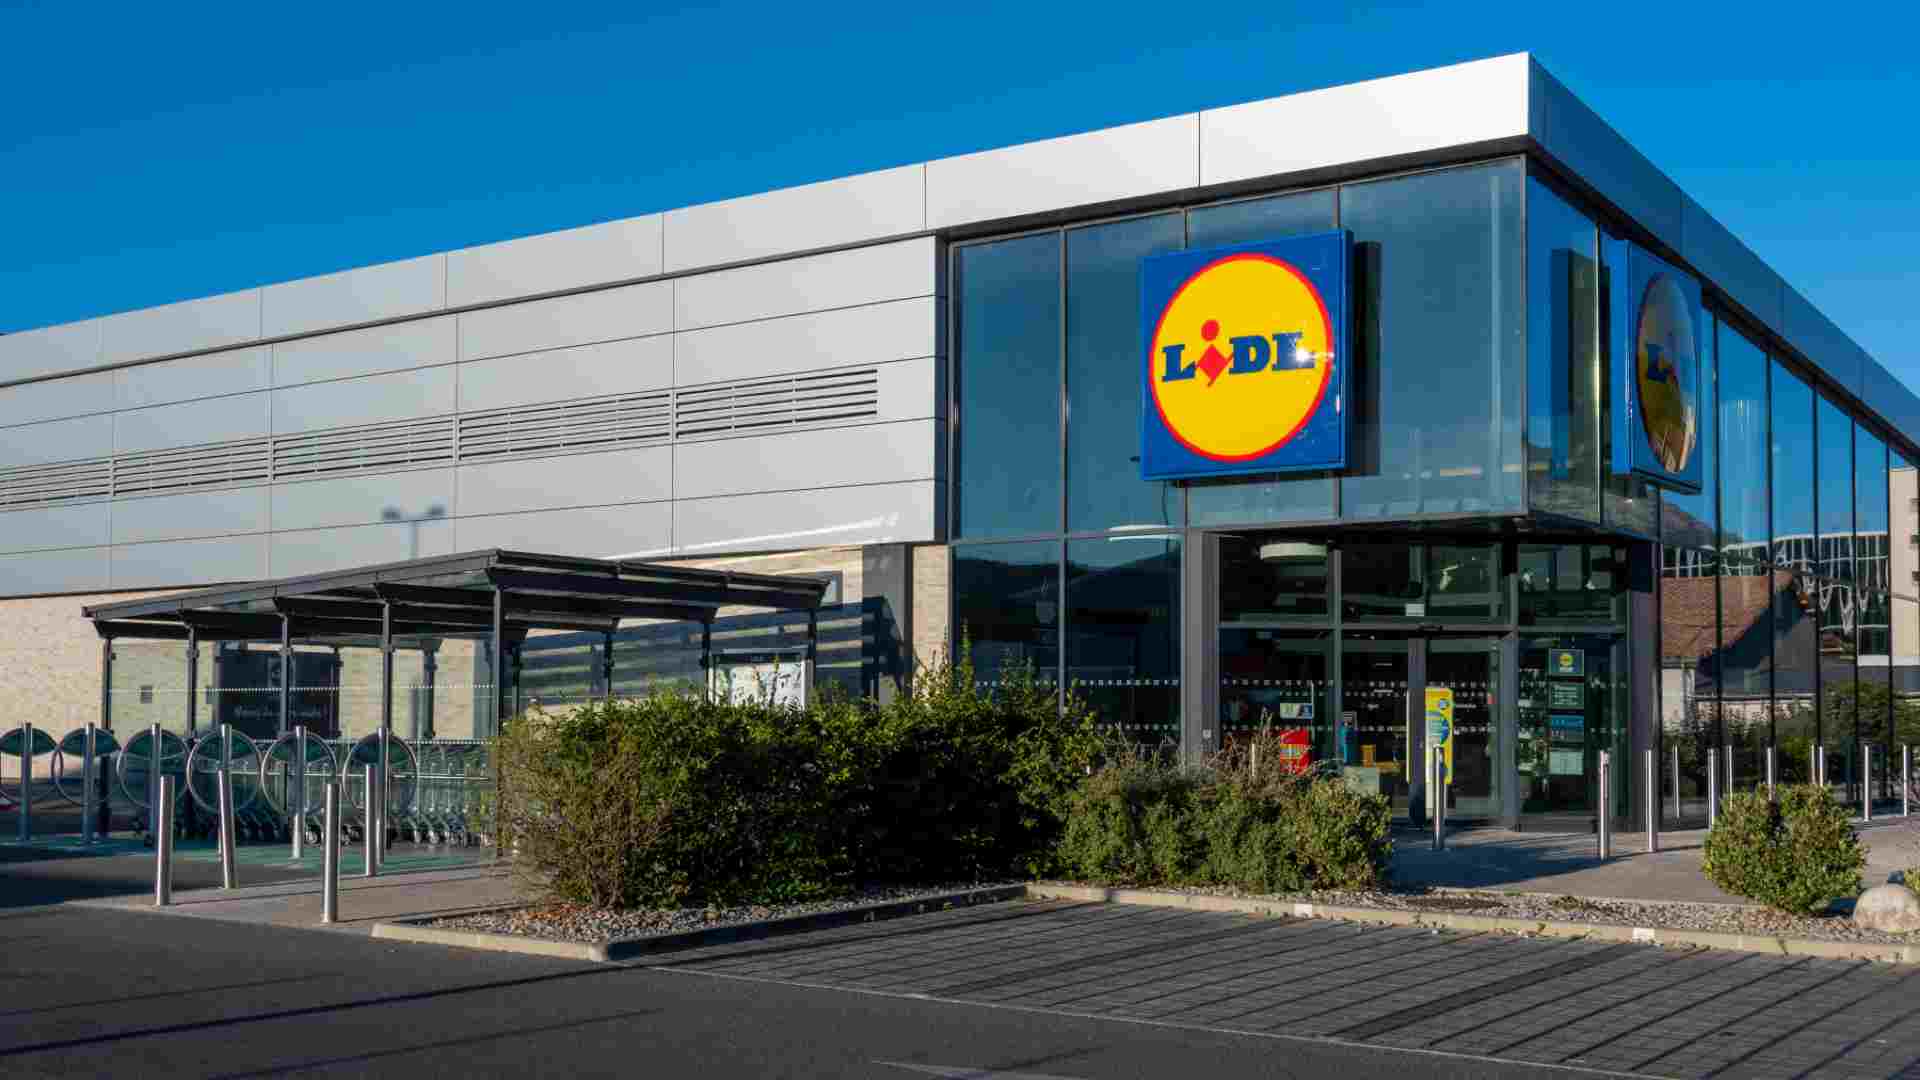 Dia vende sus casi 500 tiendas en Portugal a Auchan por 155 millones de  euros después de tres décadas en el país